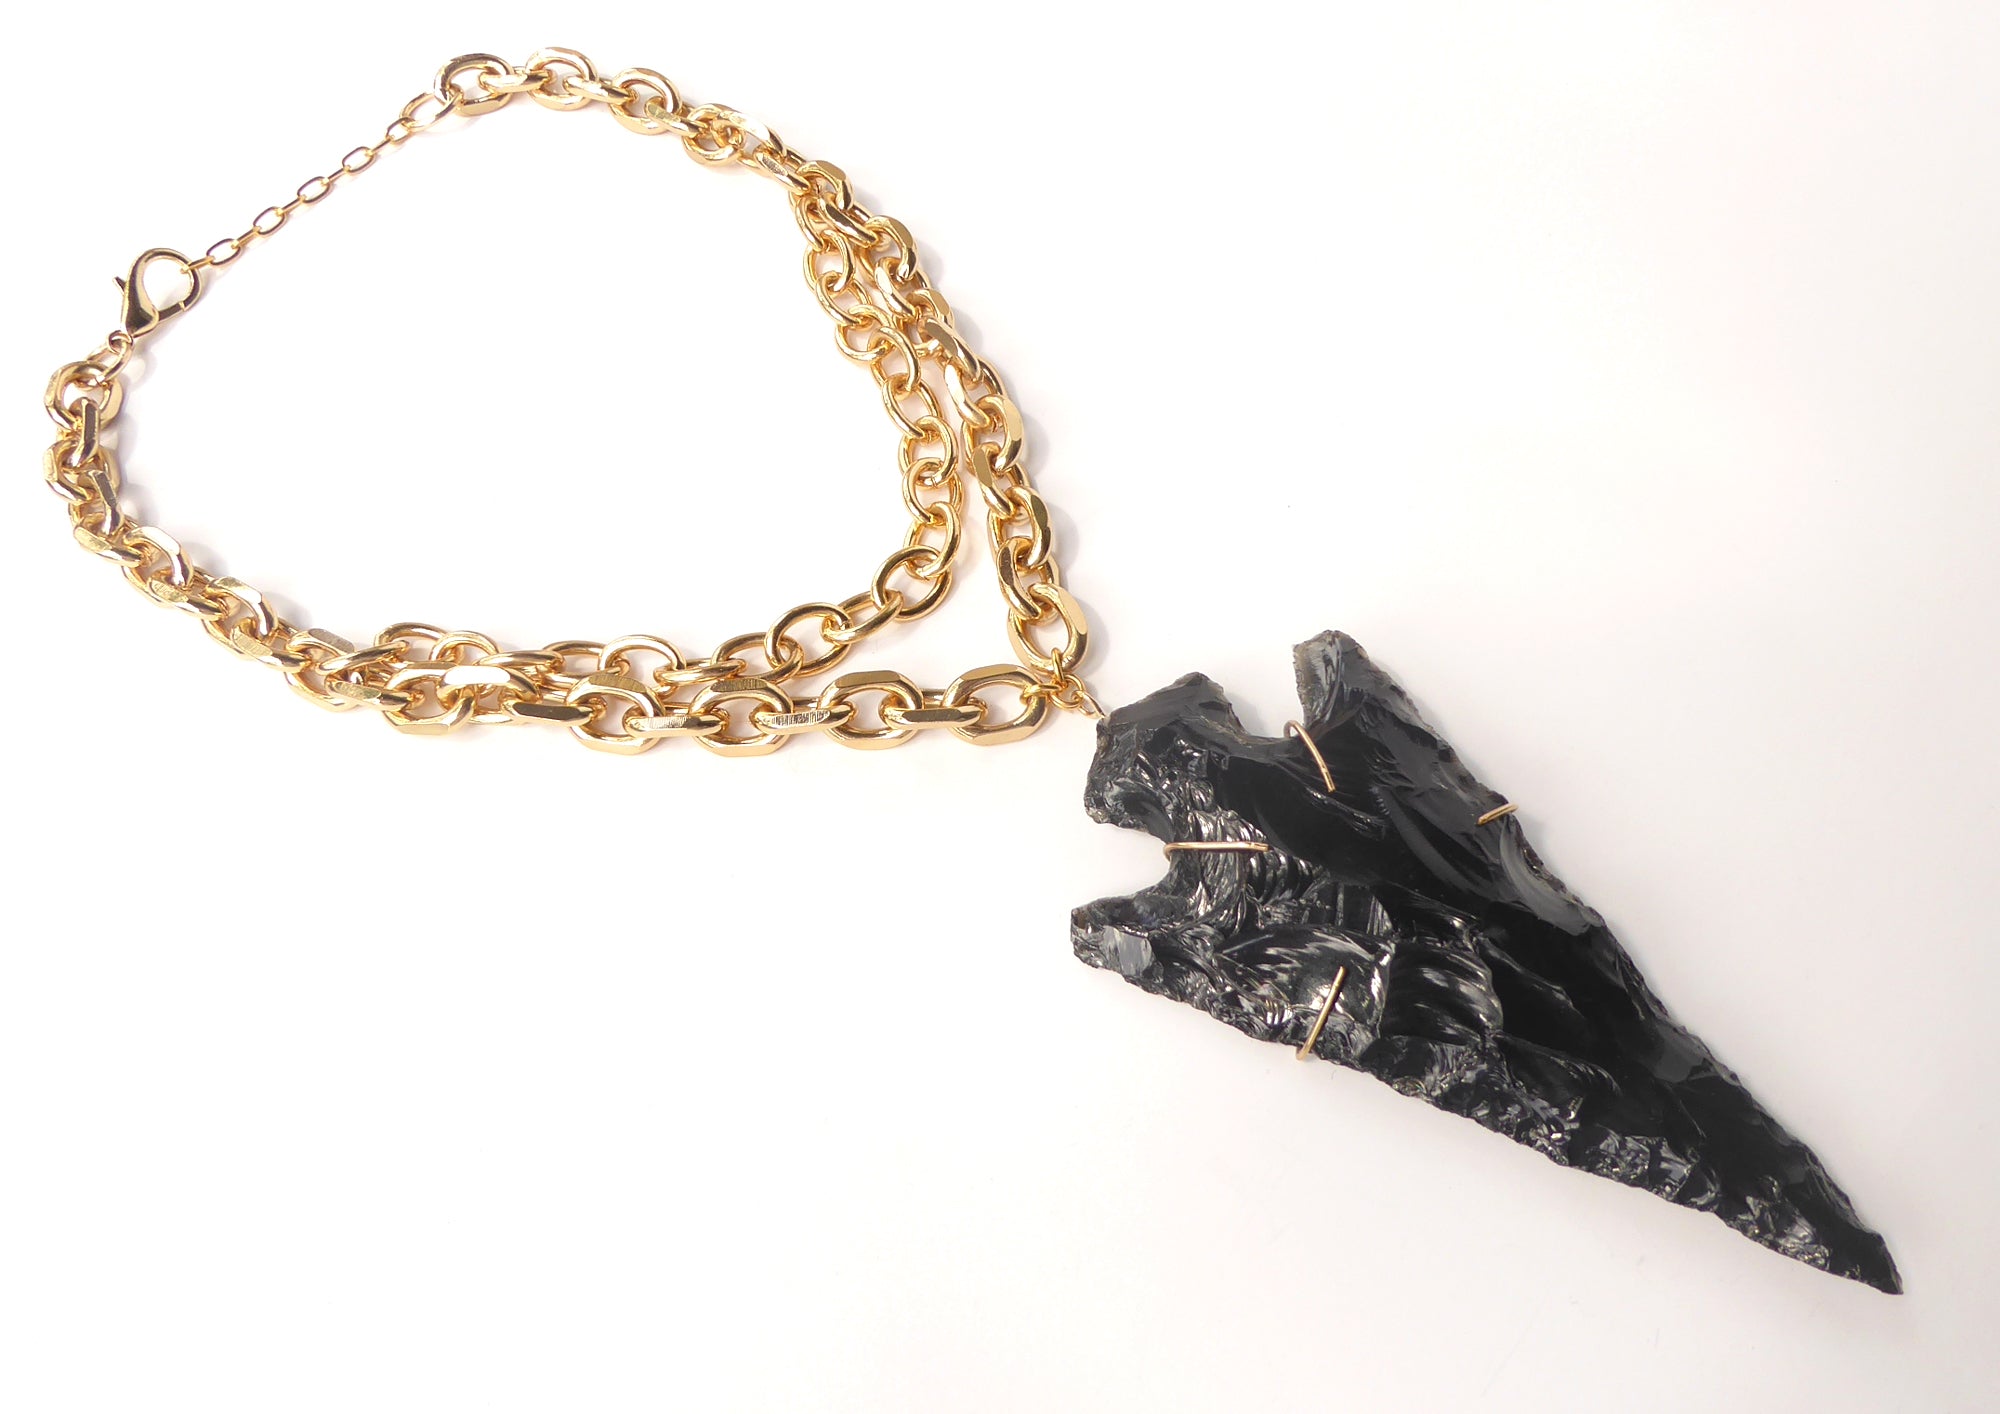 Obsidian arrowhead necklace by Jenny Dayco 2